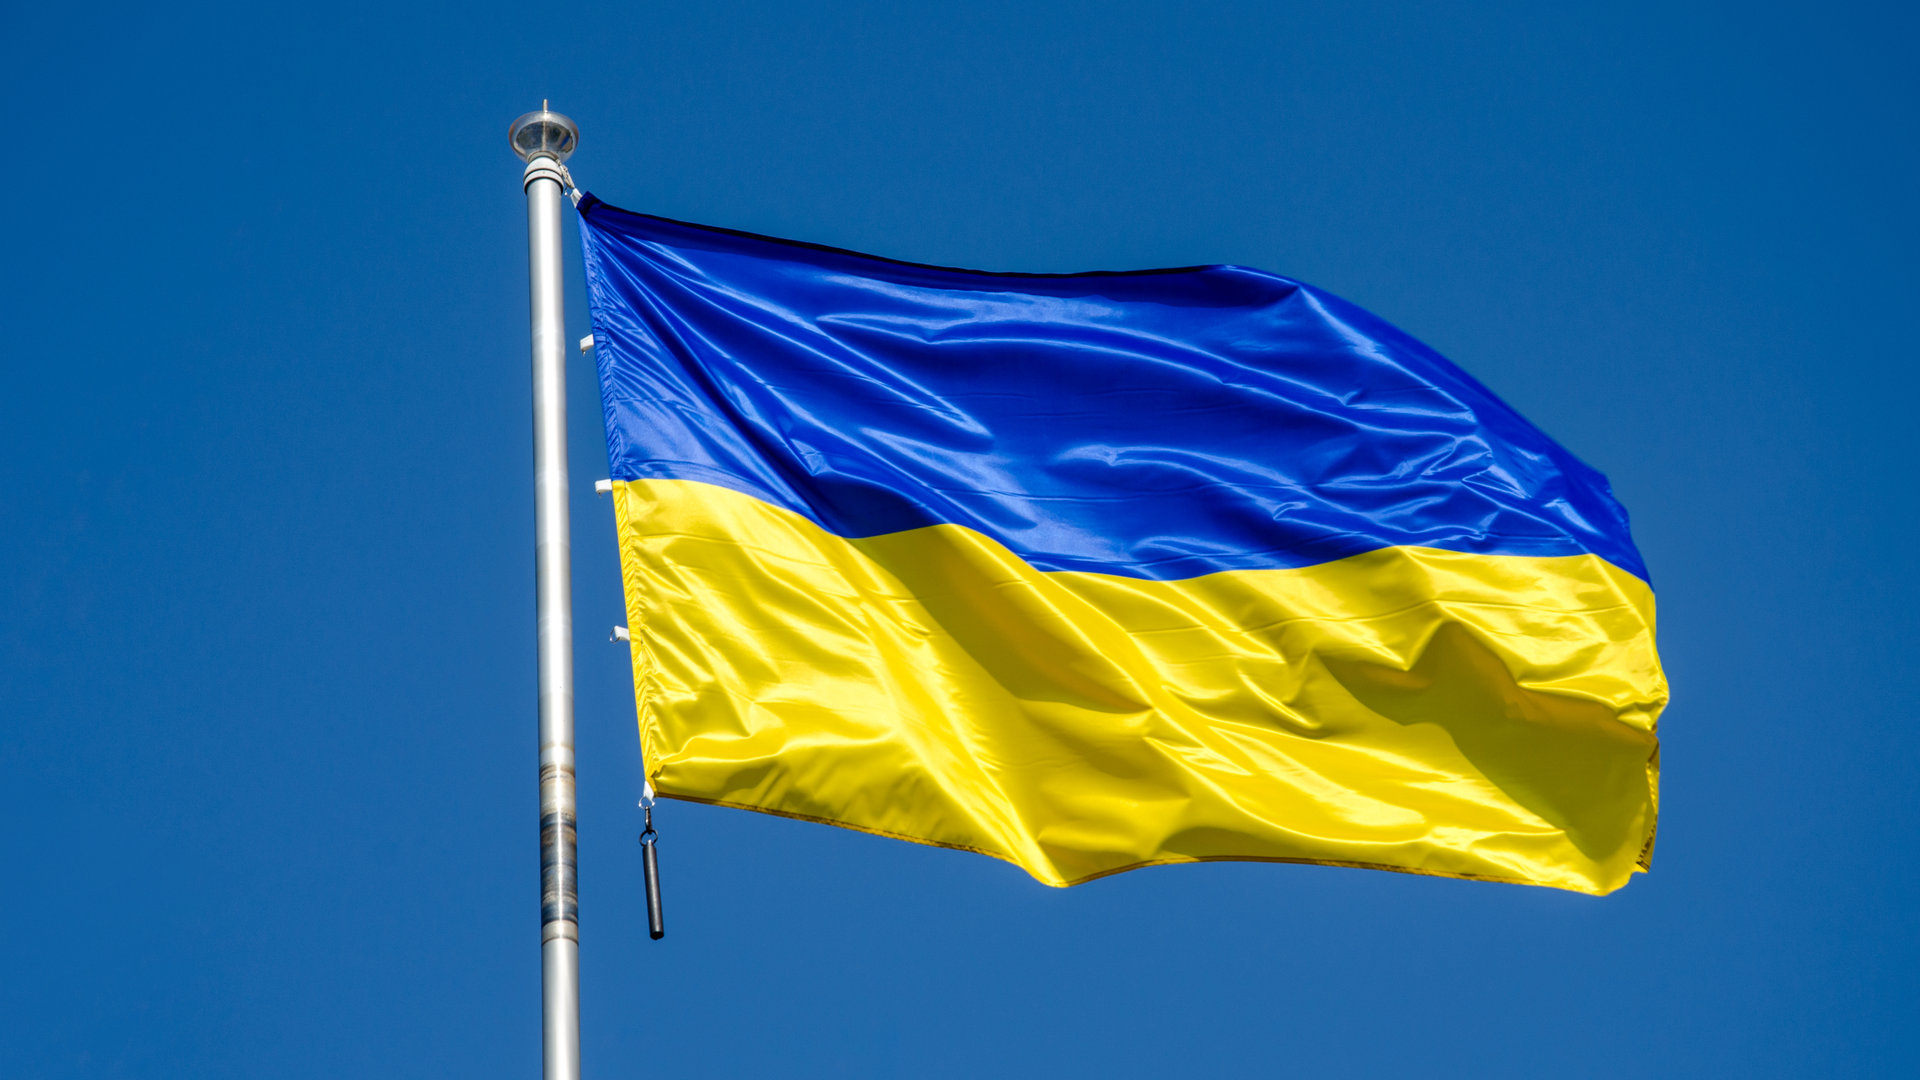 ουκρανία: συσκευή υποκλοπών βρέθηκε σε γραφείο του αρχηγού του γενικού επιτελείου